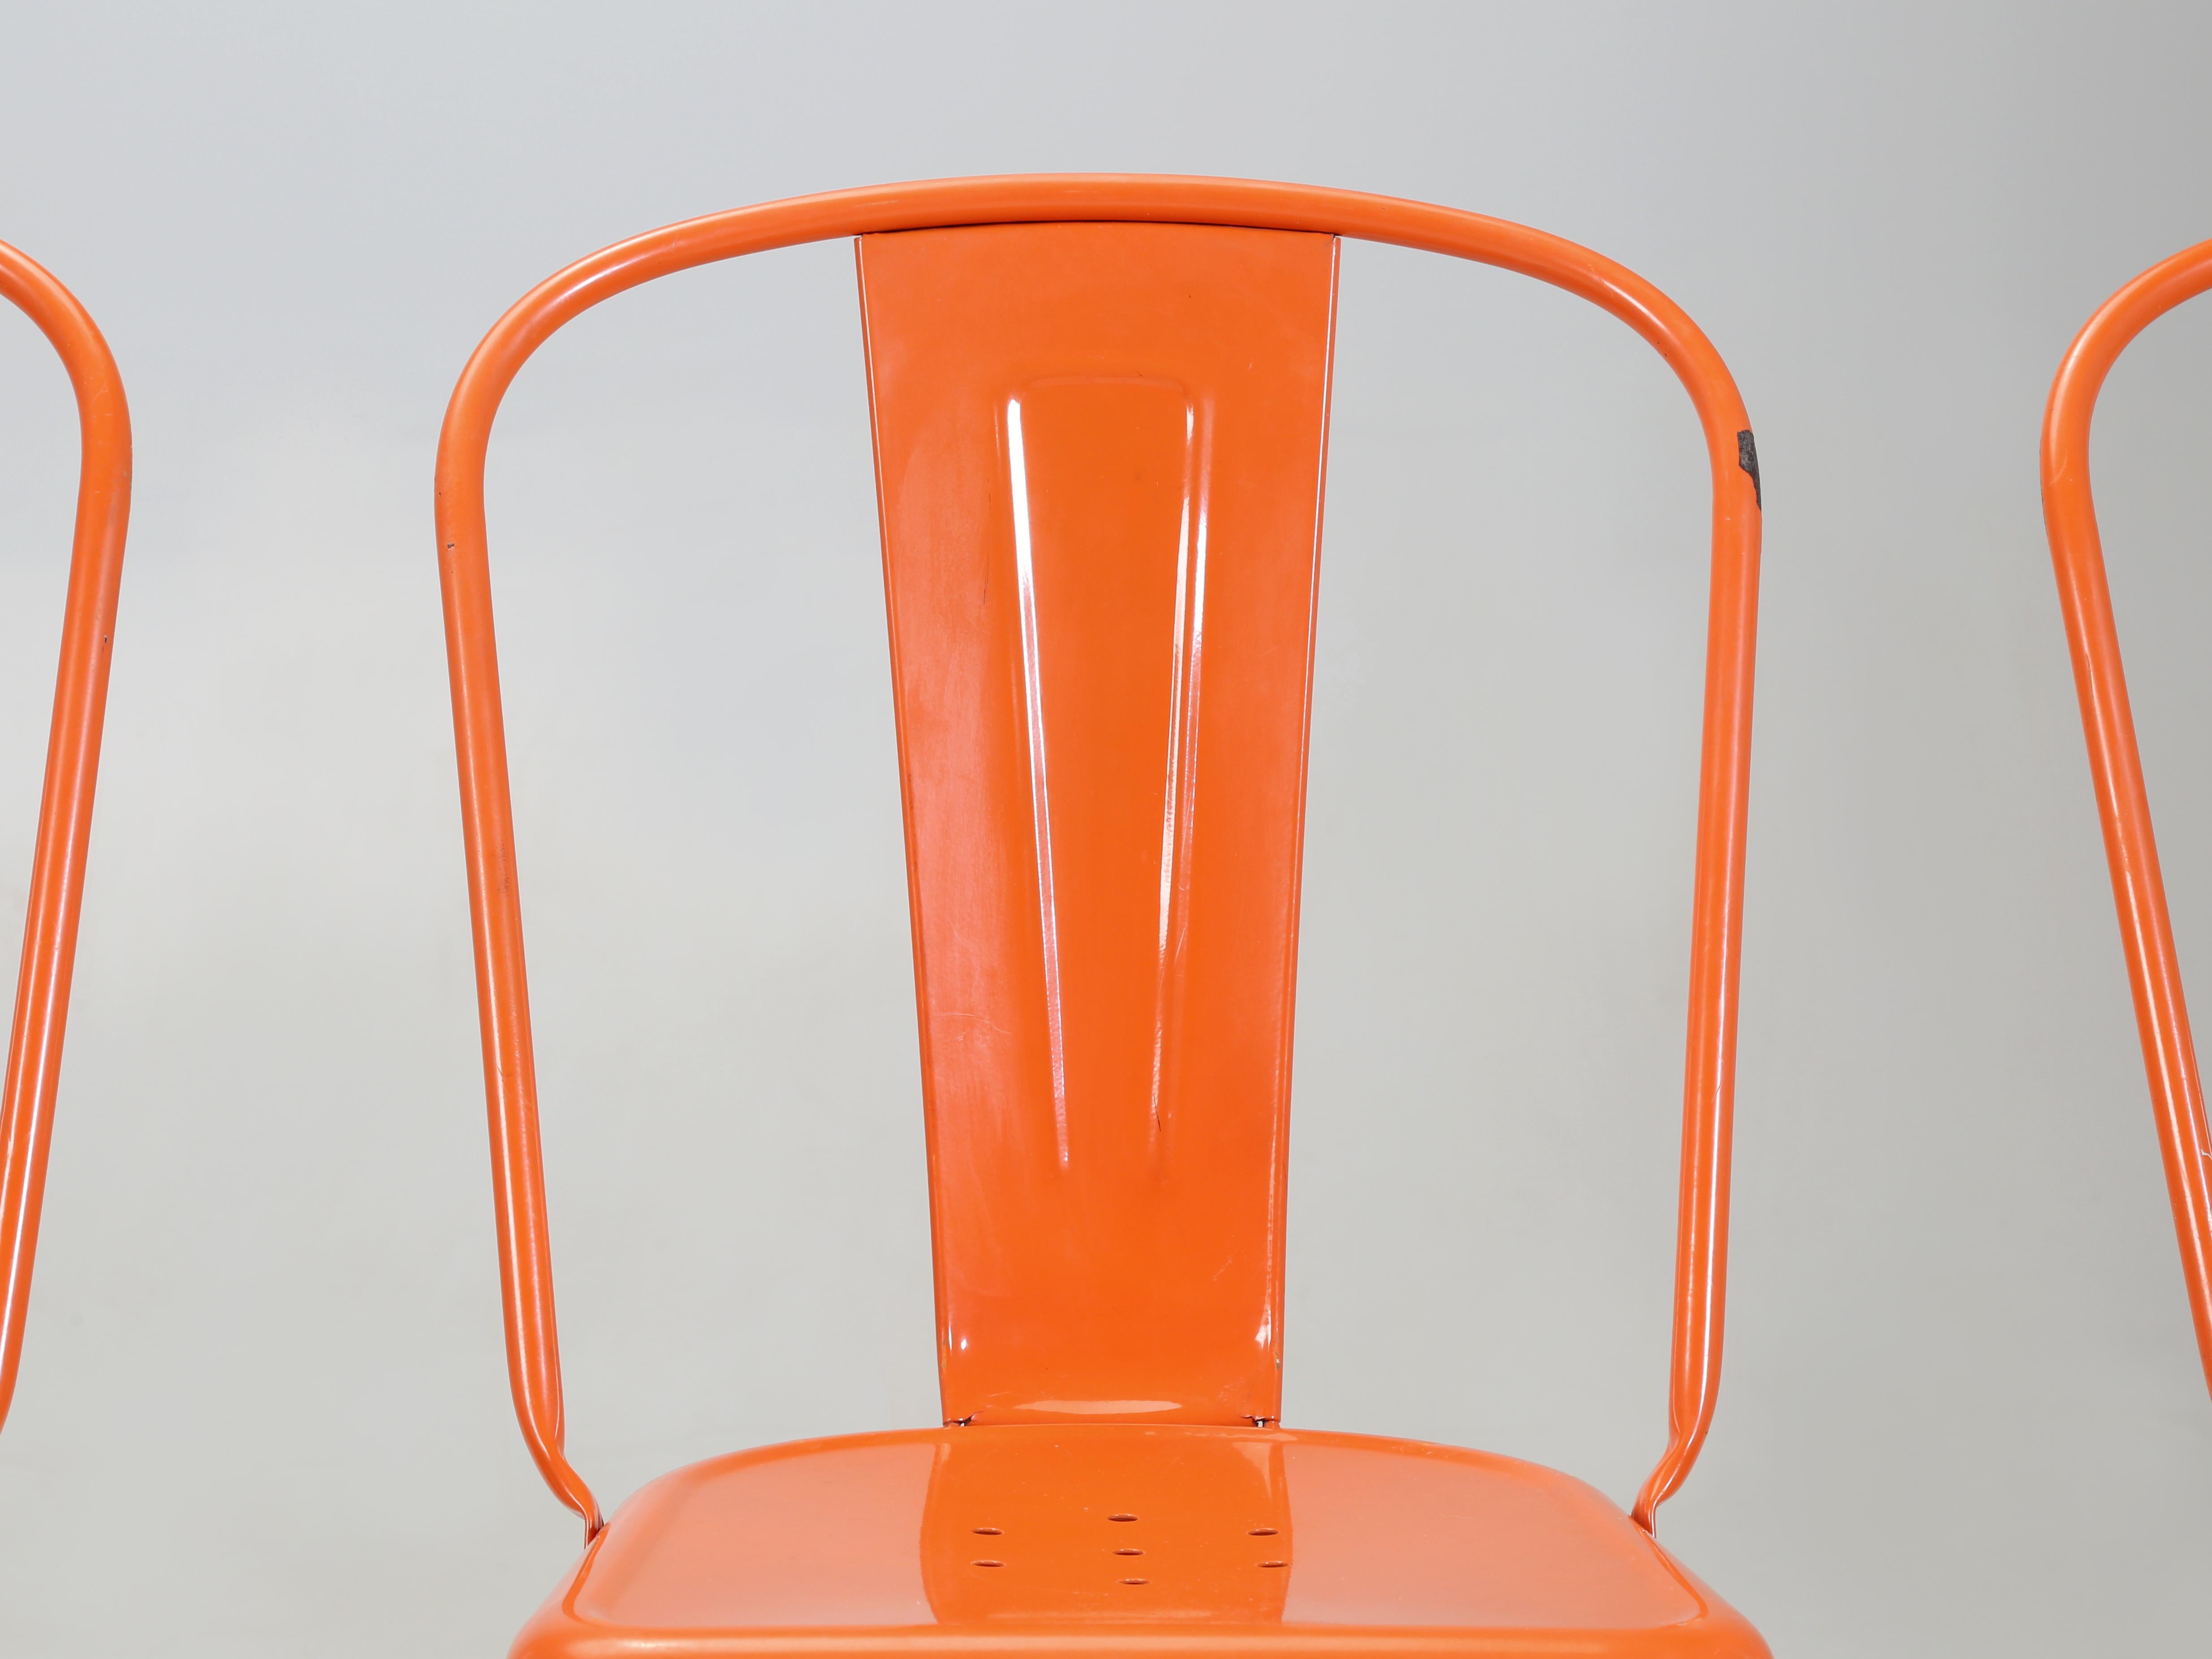 Véritable ensemble de 6 chaises empilables en acier Tolix de fabrication française, probablement fabriquées dans les années 1960. Les chaises Tolix ont été conçues pour être empilées en toute sécurité sur une hauteur de 12 mètres, selon le